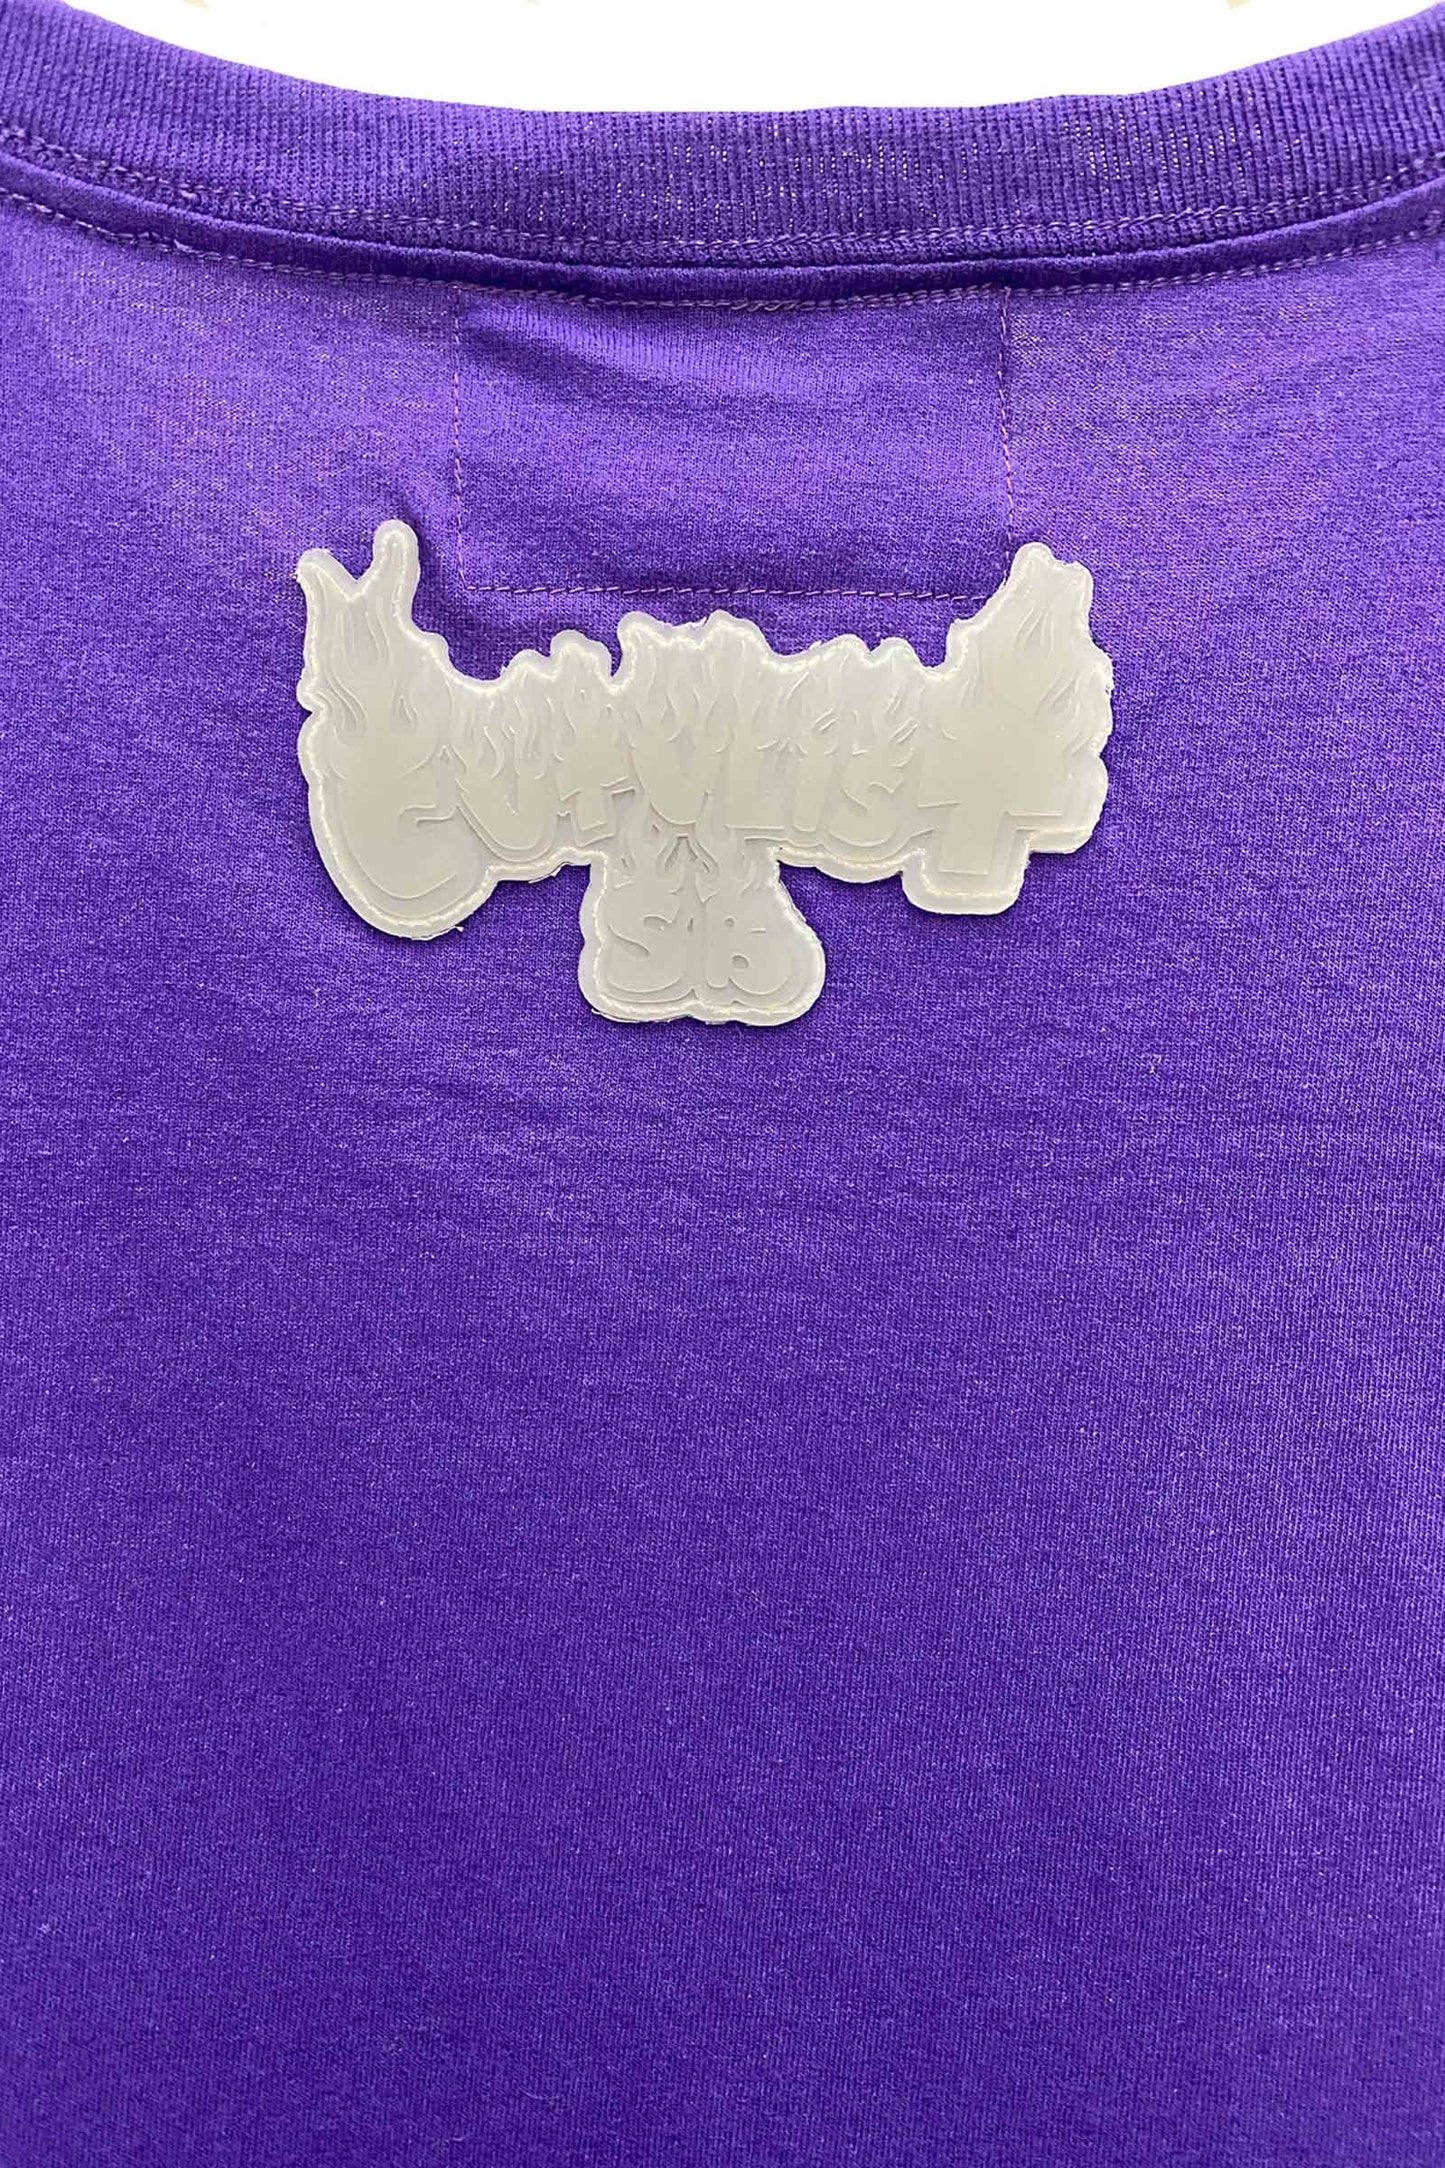 カタリストSB/ | Montana Tee/Tシャツ/purple